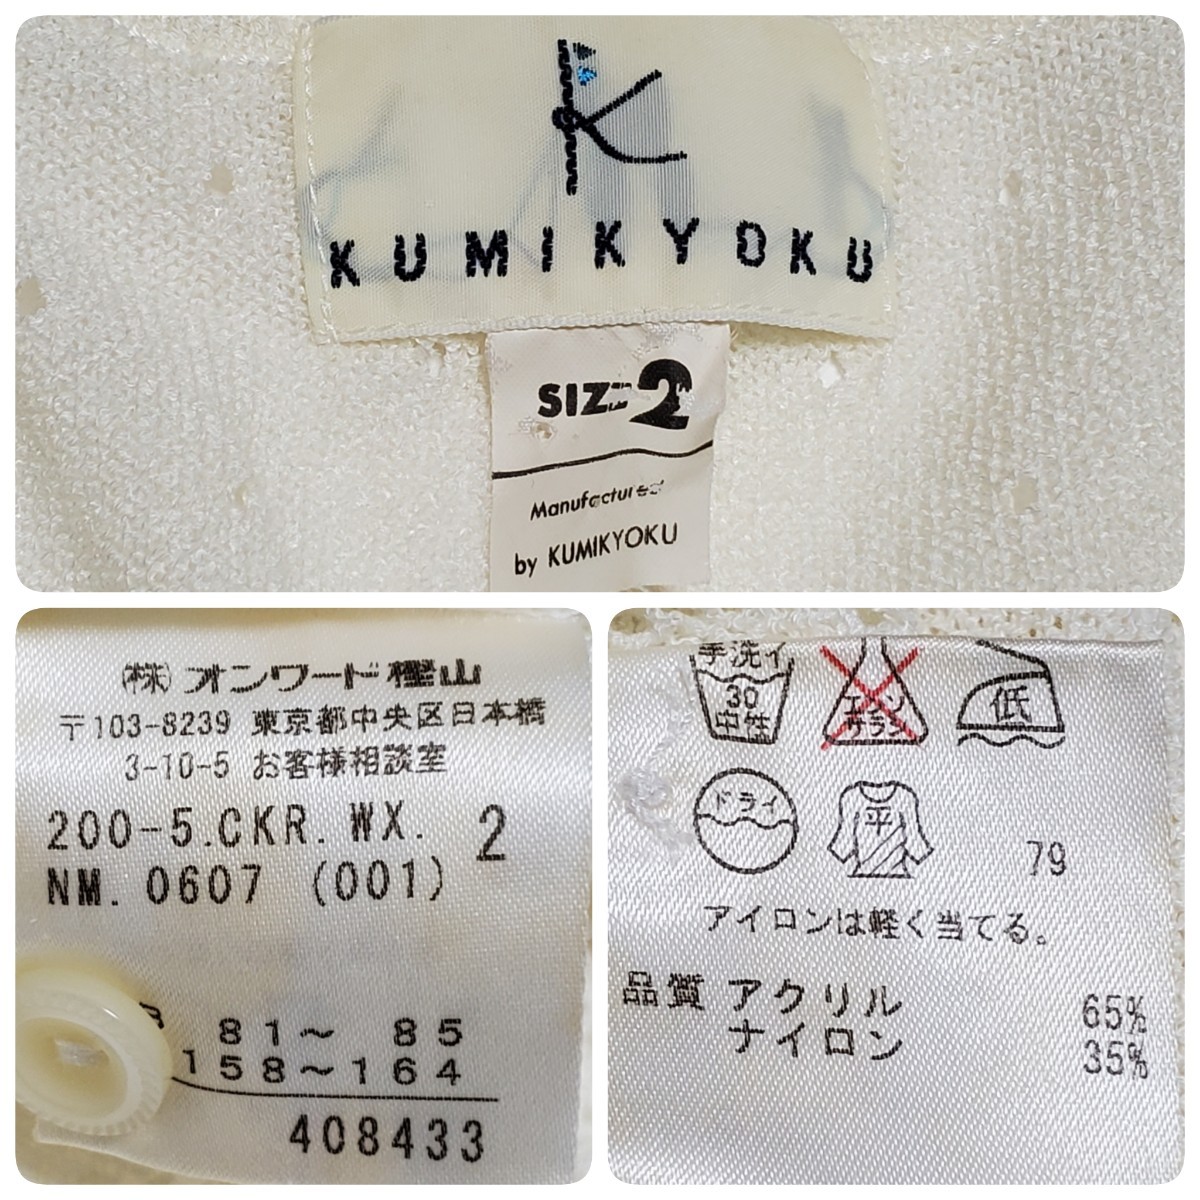 KUMIKYOKU Kumikyoku "теплый" белый 7 минут рукав кардиган размер 2( примерно M размер соответствует ) б/у товар 